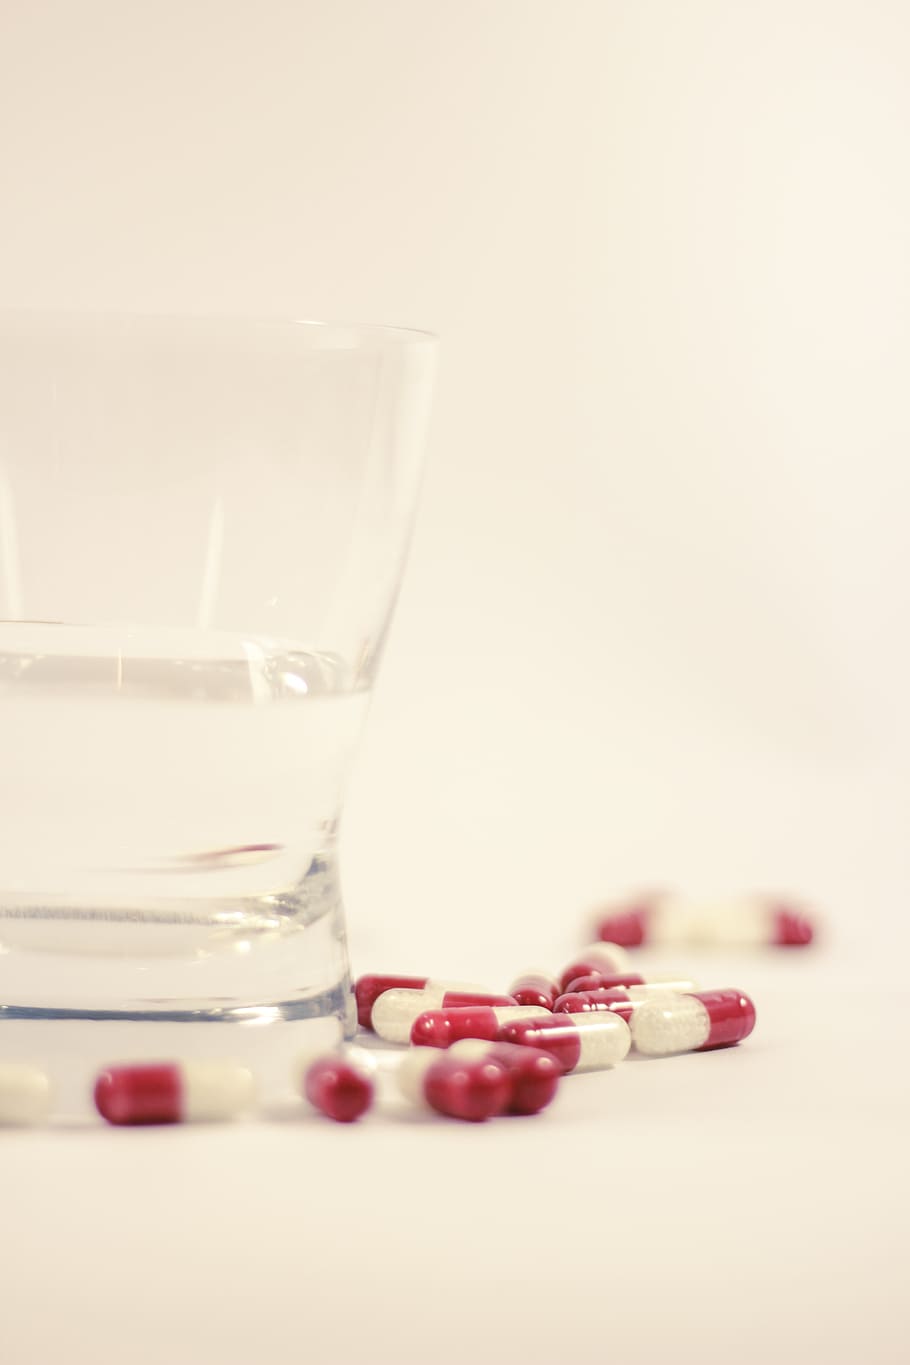 tabletas de medicamentos, al lado, vaso para beber, cura, drogas, resfriado, dosis, la enfermedad, farmacia, farmacólogo